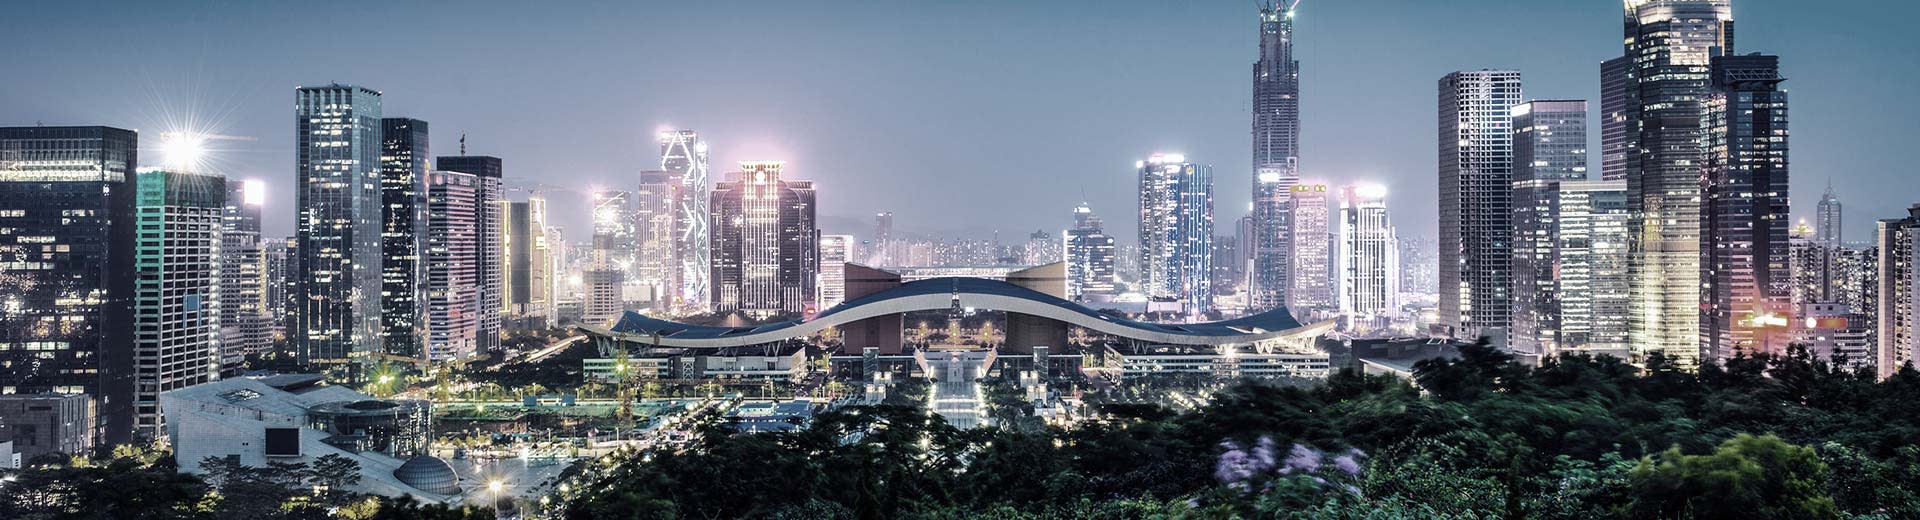 Les bâtiments modernes et les gratte-ciel s'allument dans le ciel nocturne au-dessus de Shenzhen.